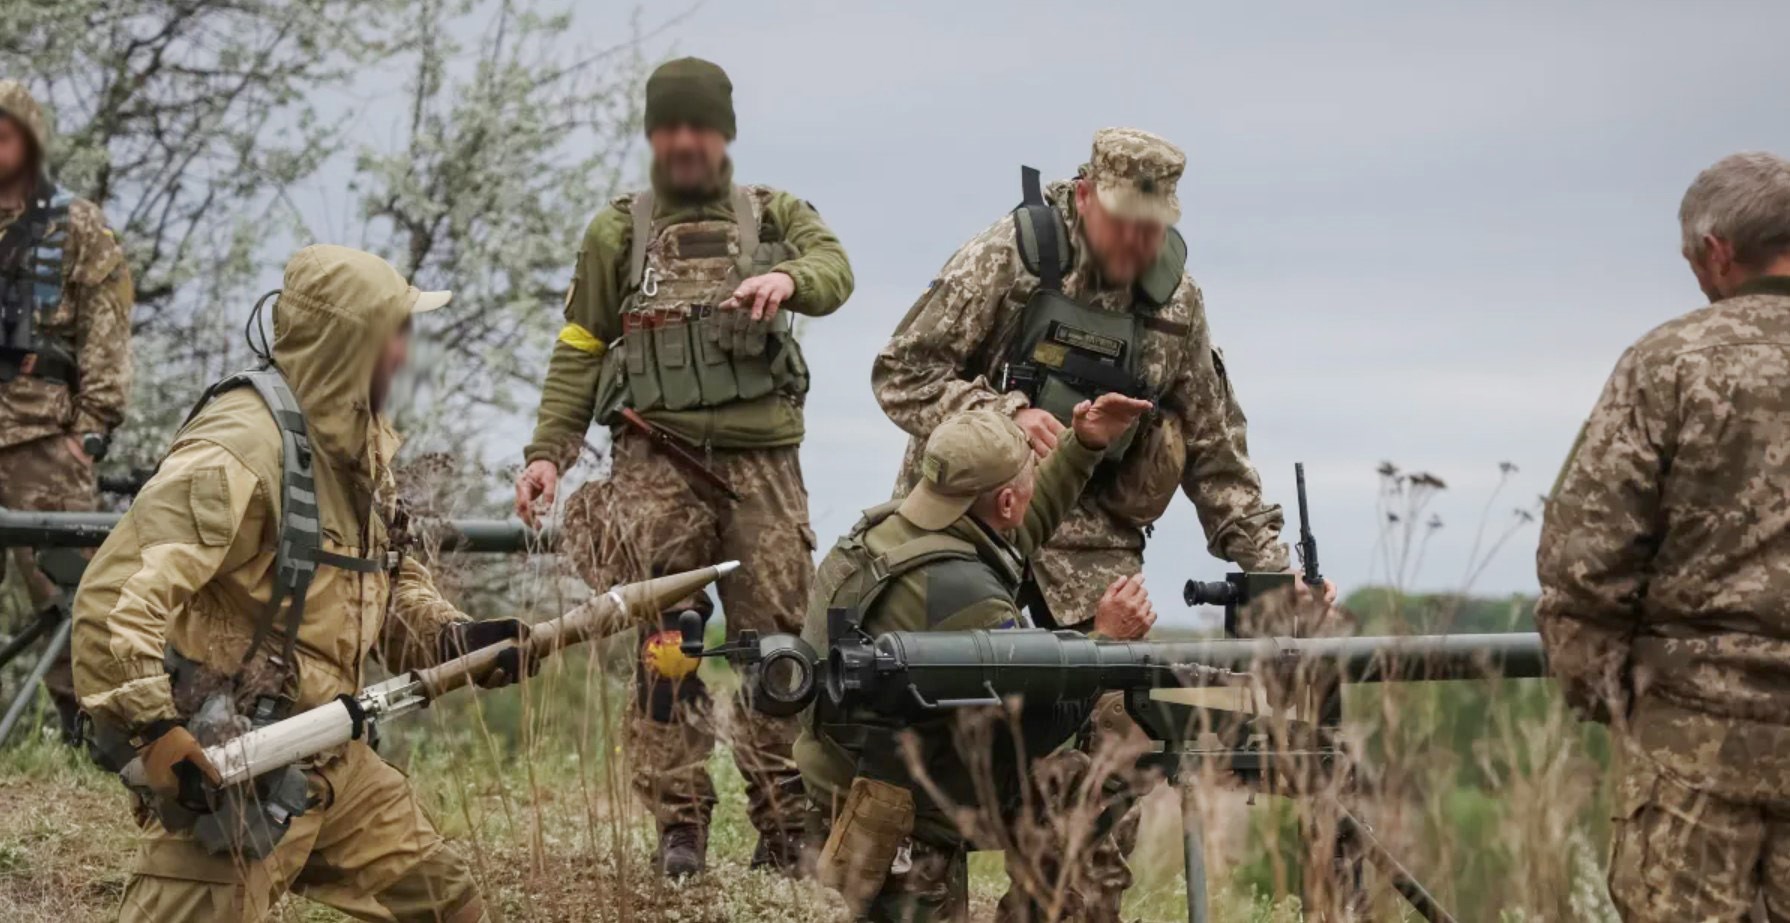 Bułgarskie granatniki SPG-9 Warrior są już używane na froncie (wideo)